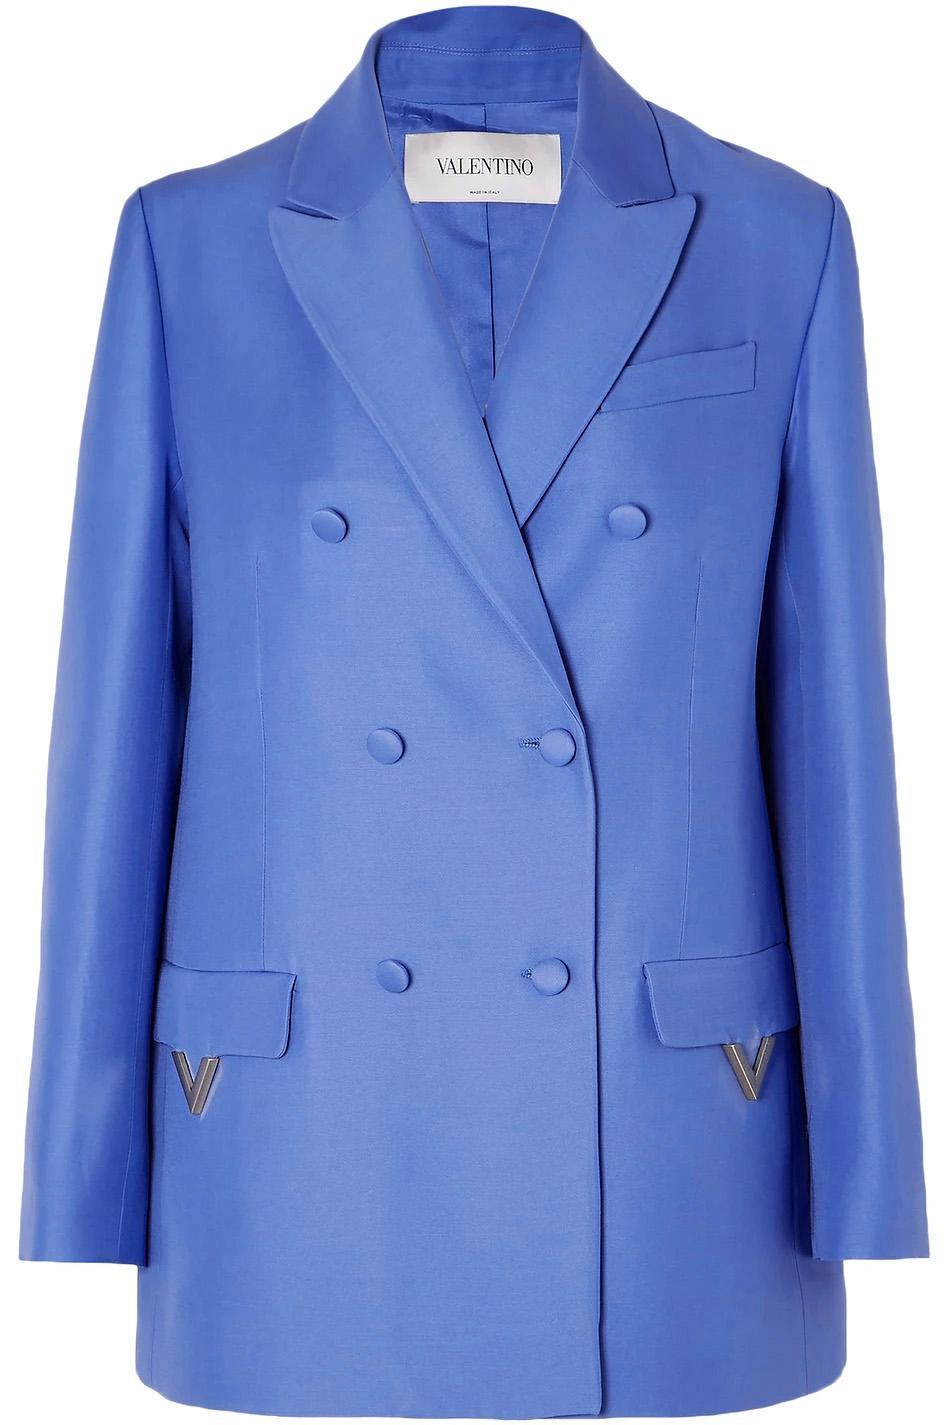 Шелковый жаккард Valentino, цвет Синий, фото 2